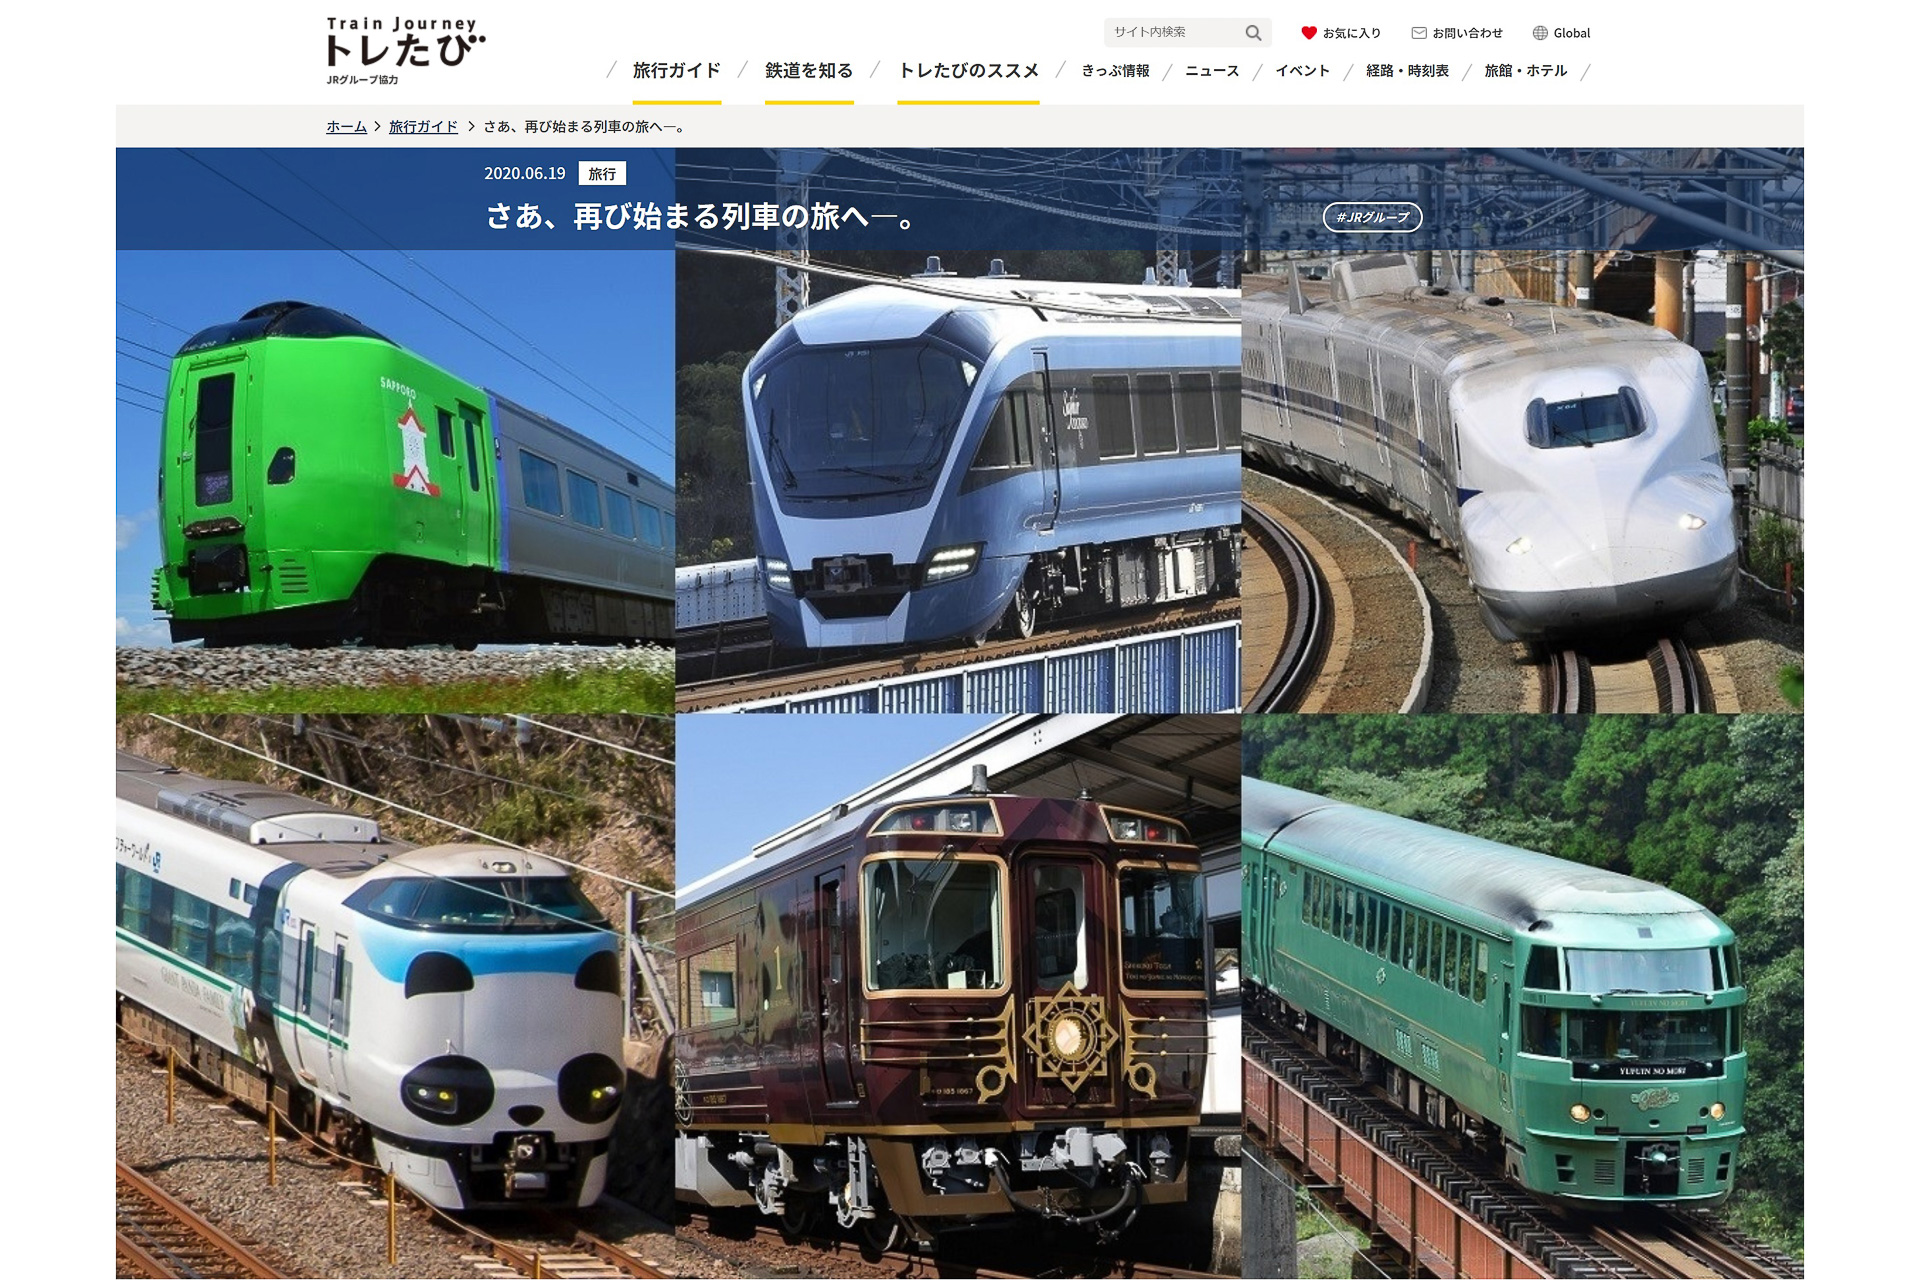 Jrグループ 旅に出よう 日本を楽しもう キャンペーン 鉄道の旅 で観光を盛り上げる トラベル Watch